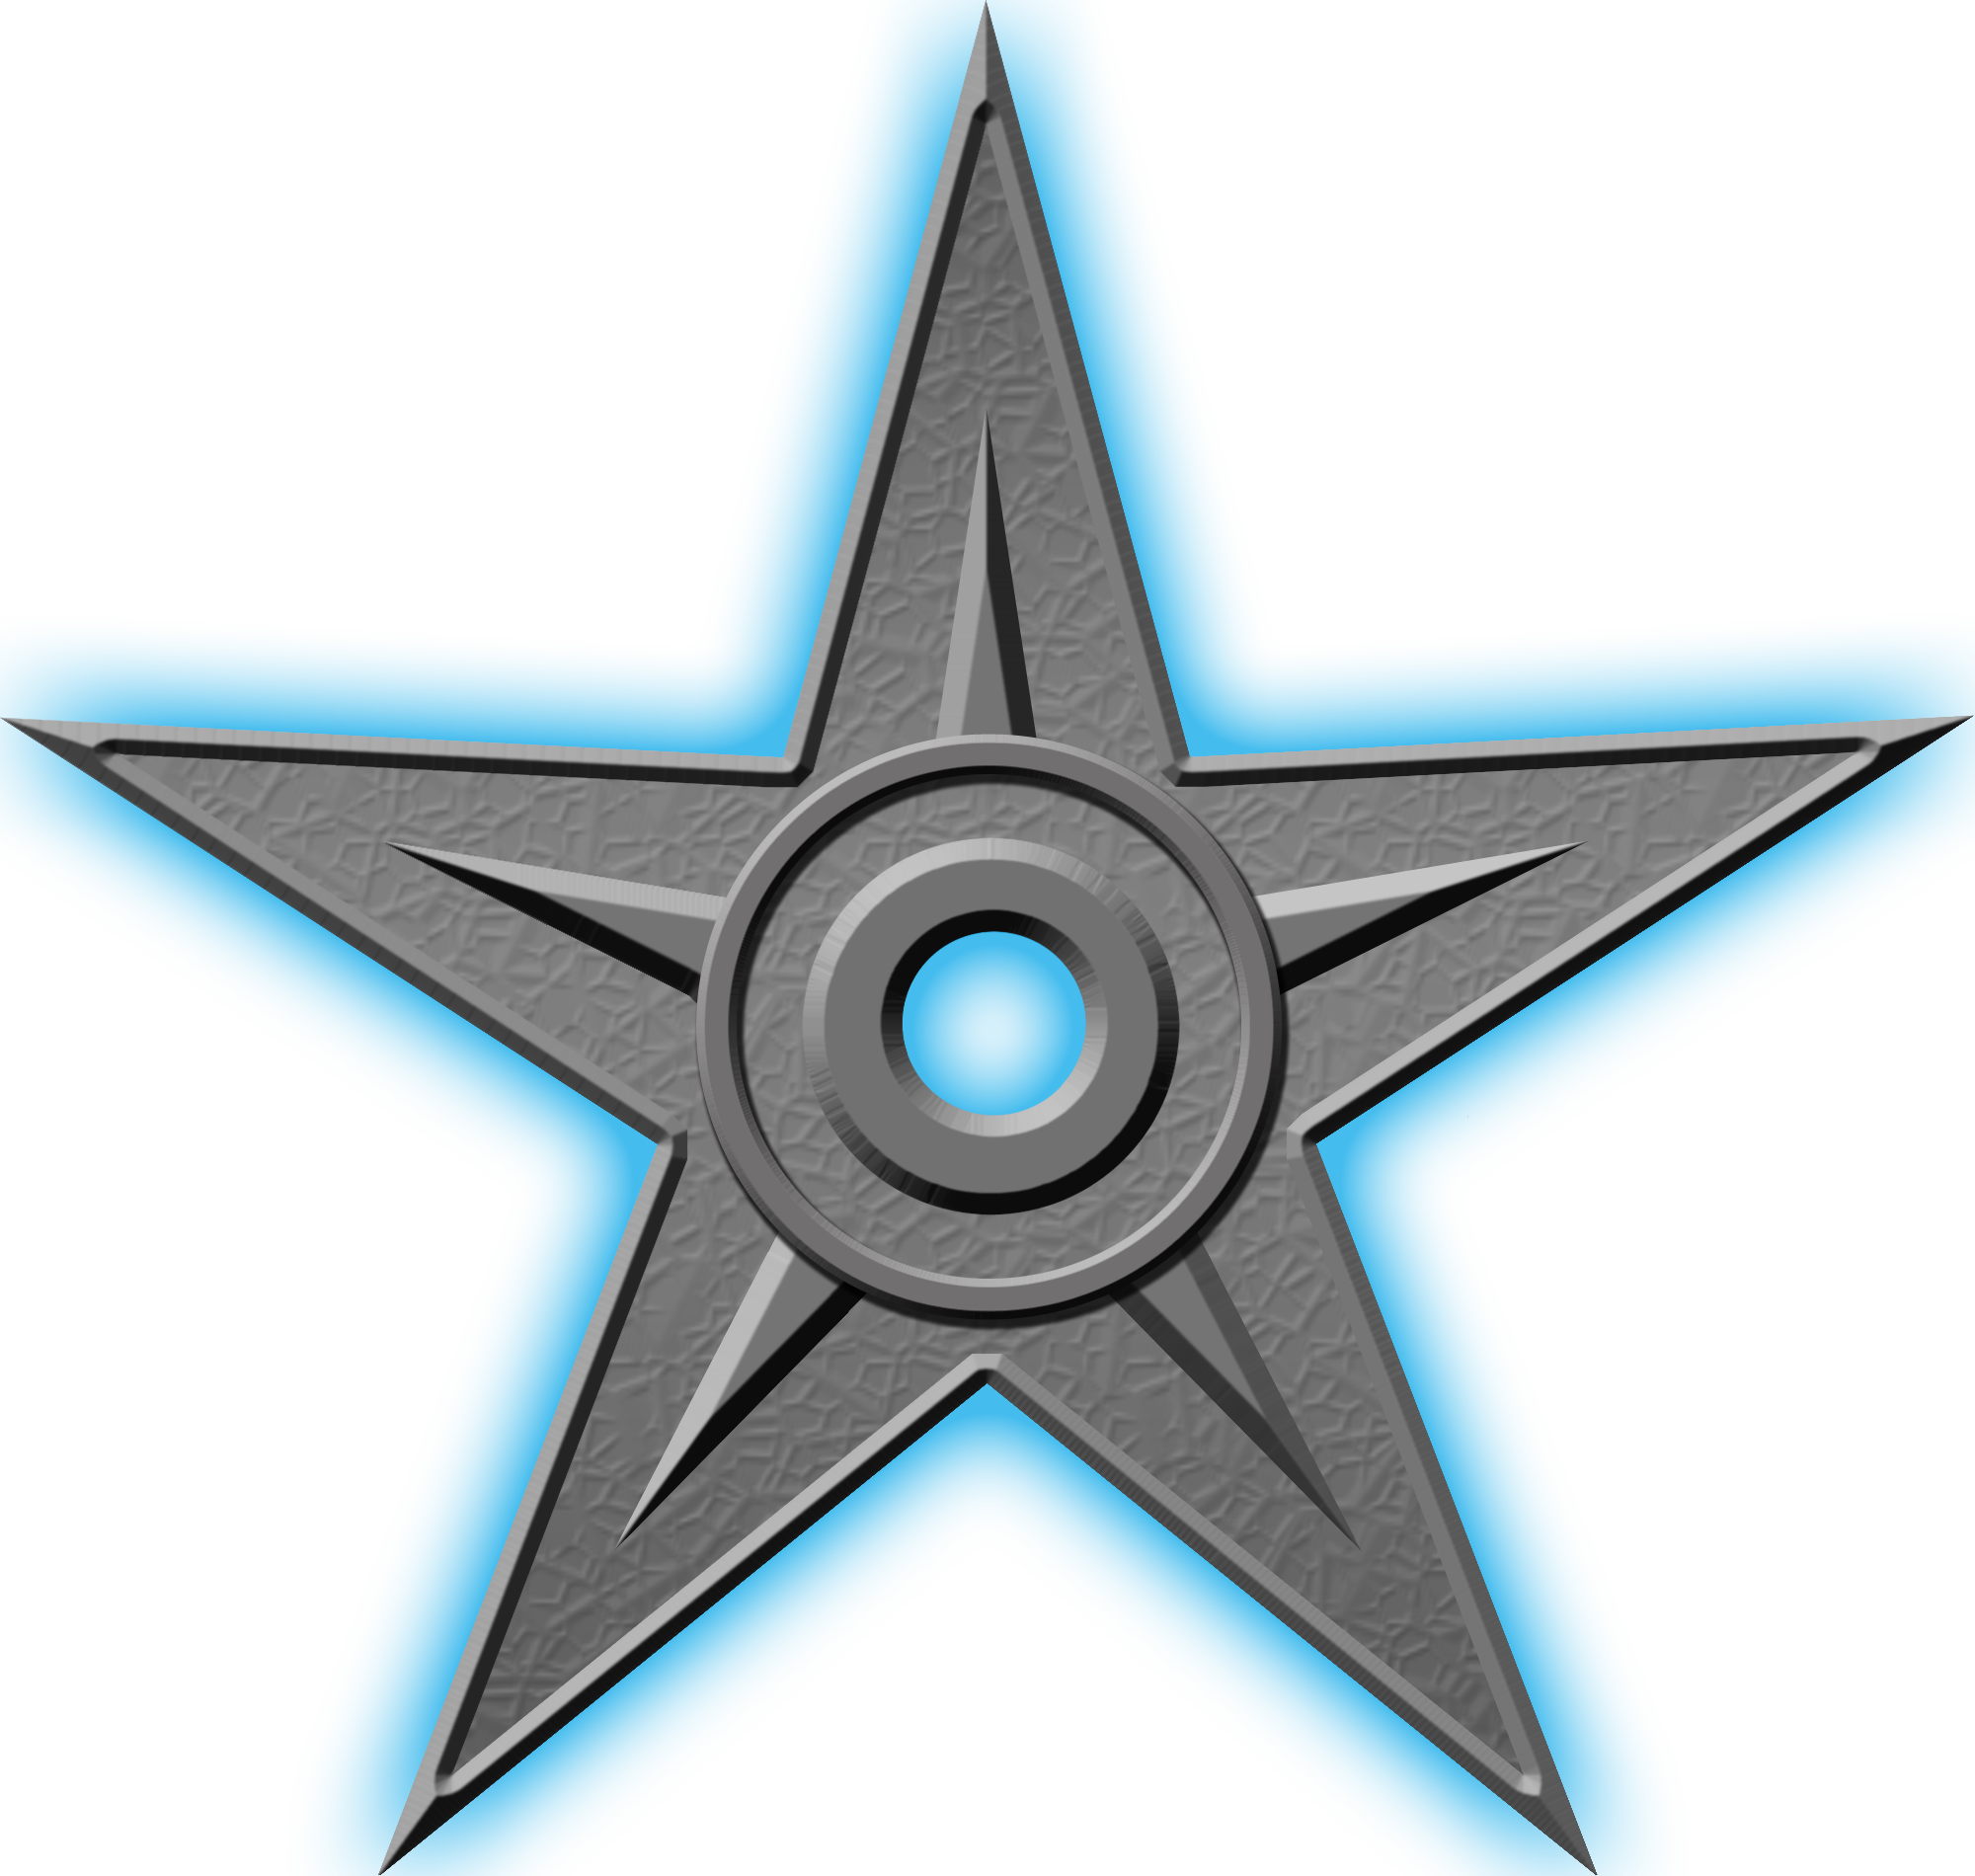 Орден #1 «За выдающиеся заслуги», присвоен 14 марта 2005 участником Dodonov за «огромное количество статей на острополитические темы»